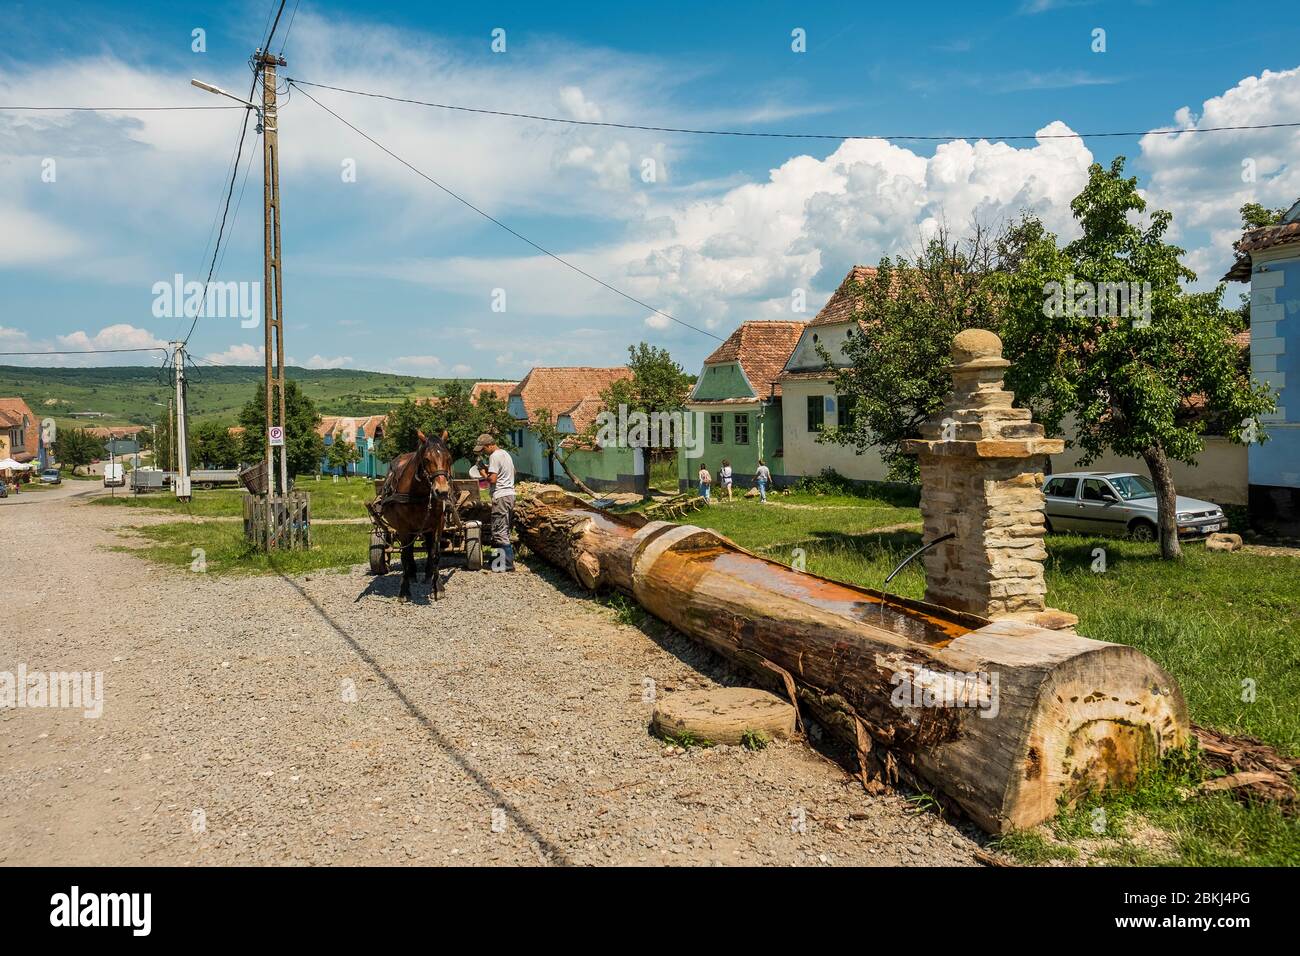 Romania, Transilvania, Viscri, villaggio con chiesa fortificata, patrimonio mondiale dell'UNESCO, un contadino rumeno pulisce il suo carro Foto Stock